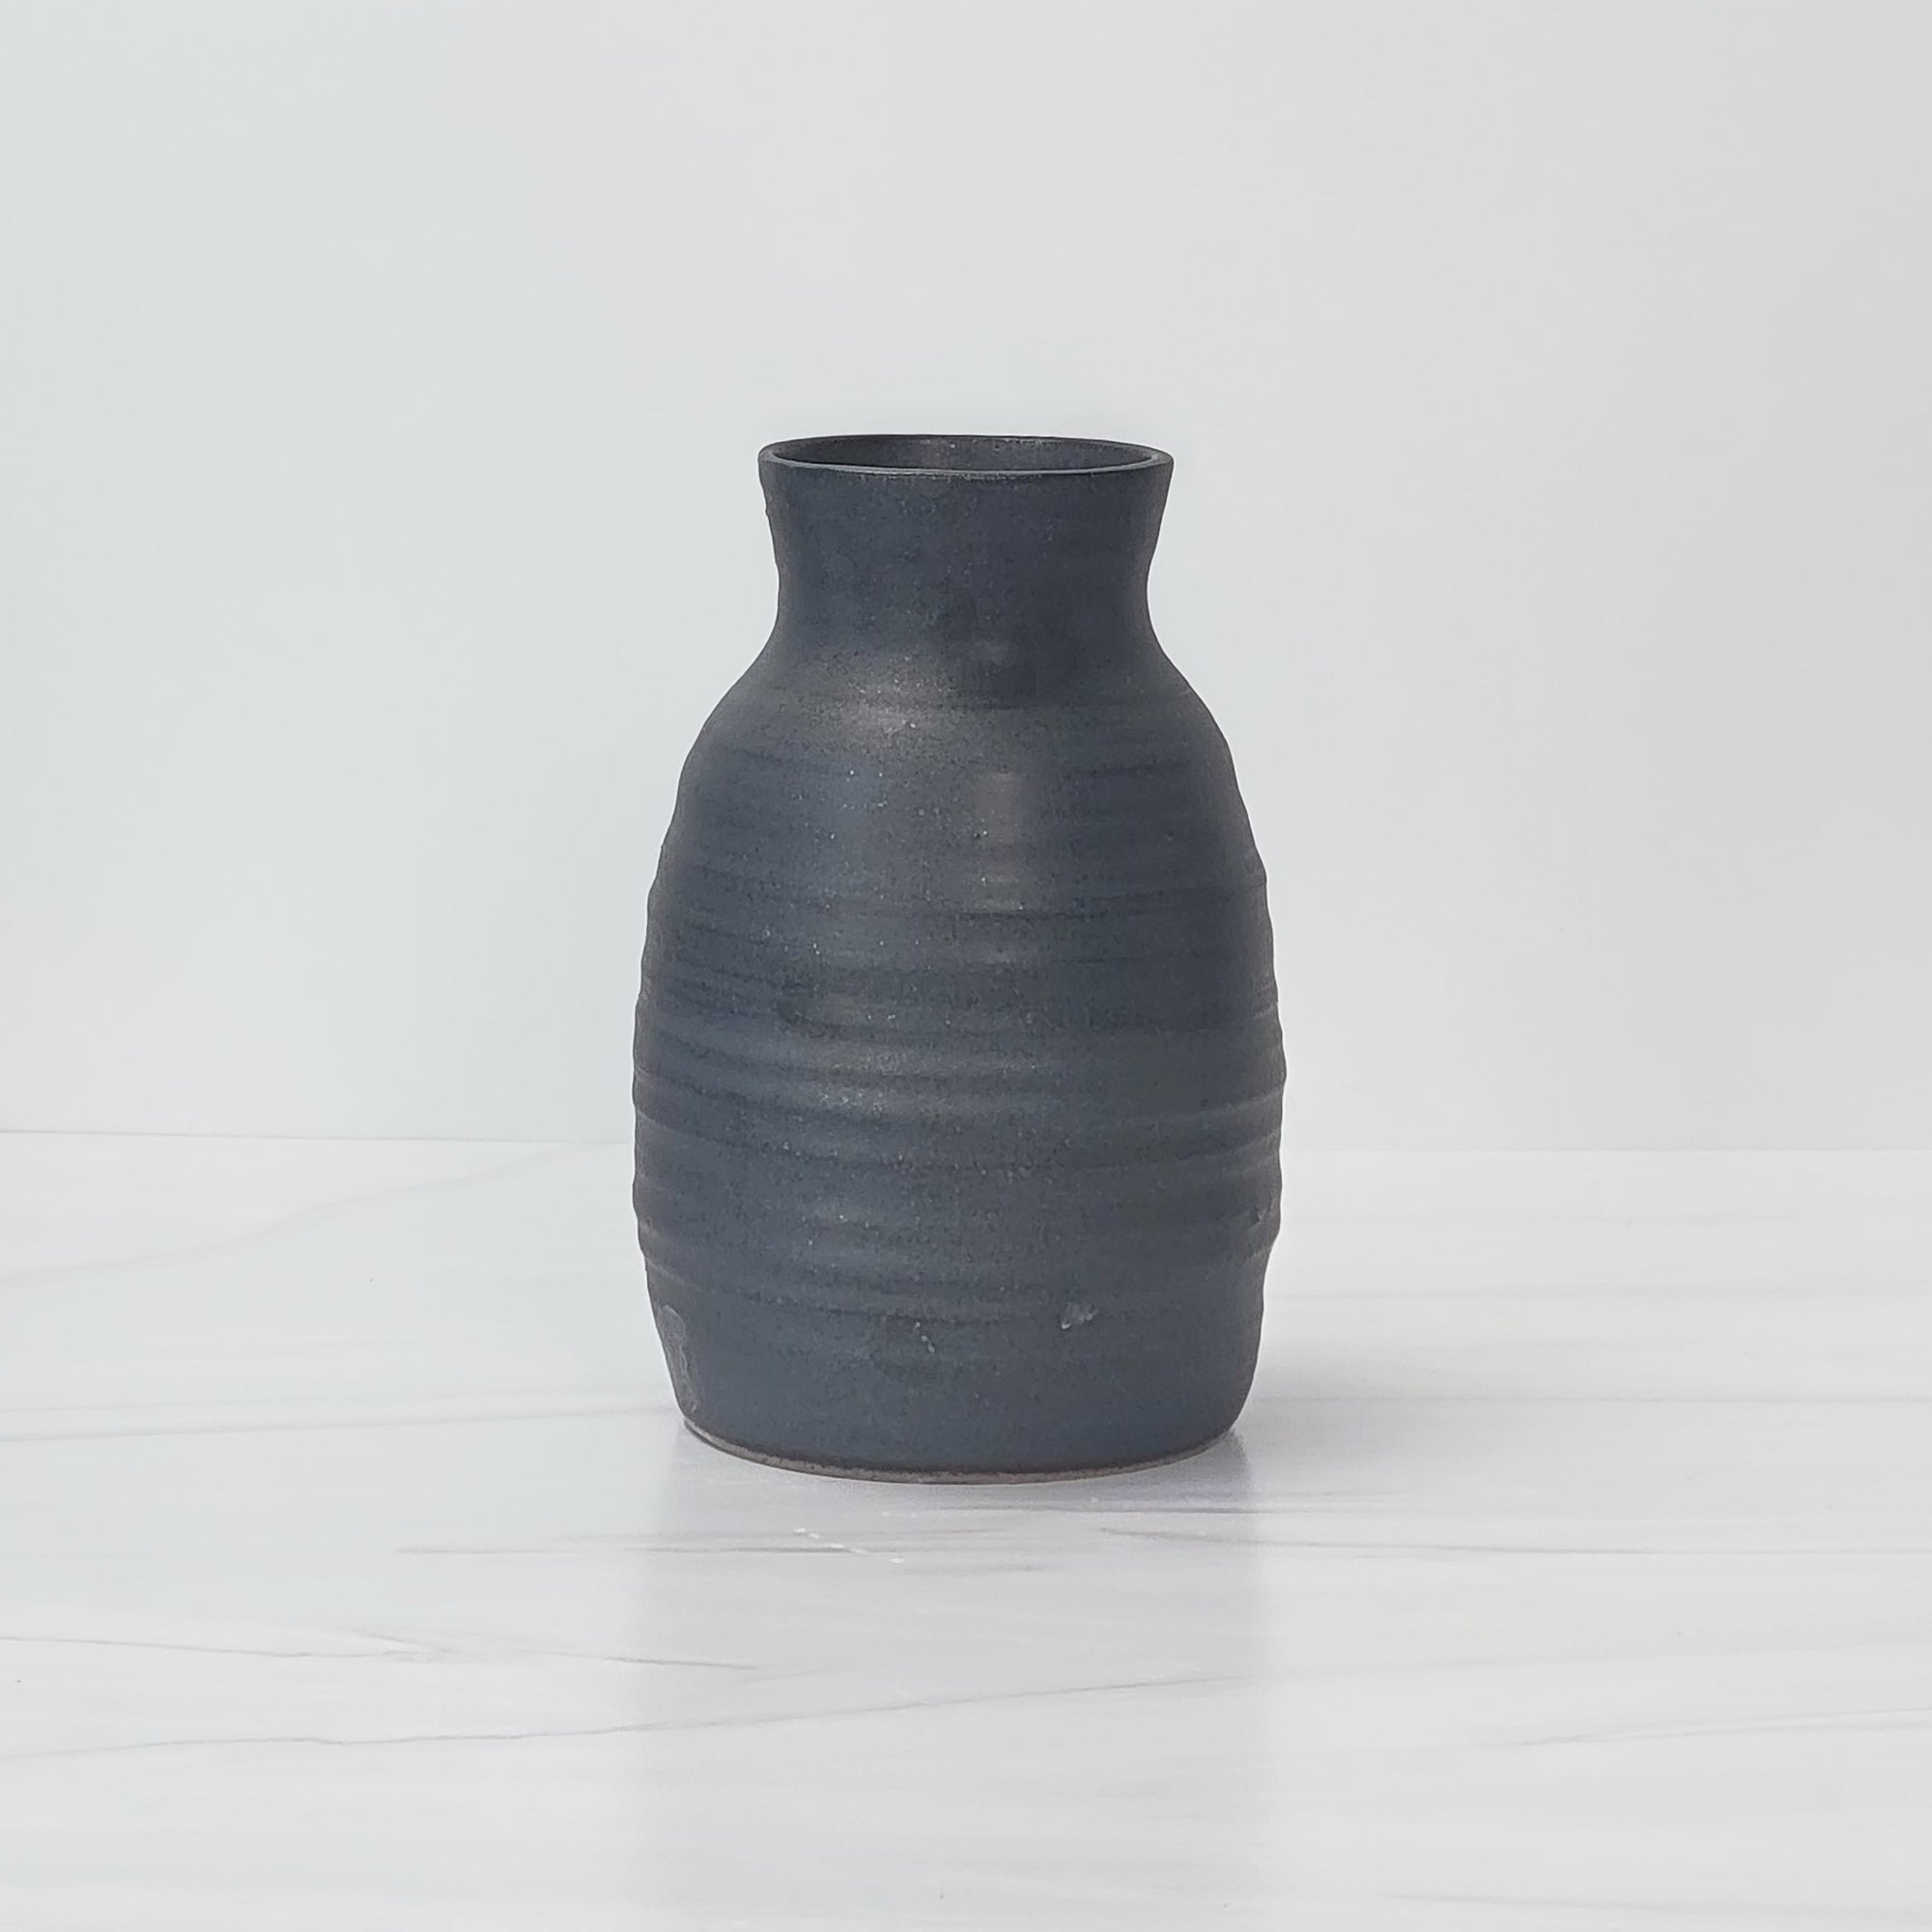 Basalt black speckle ceramic vase